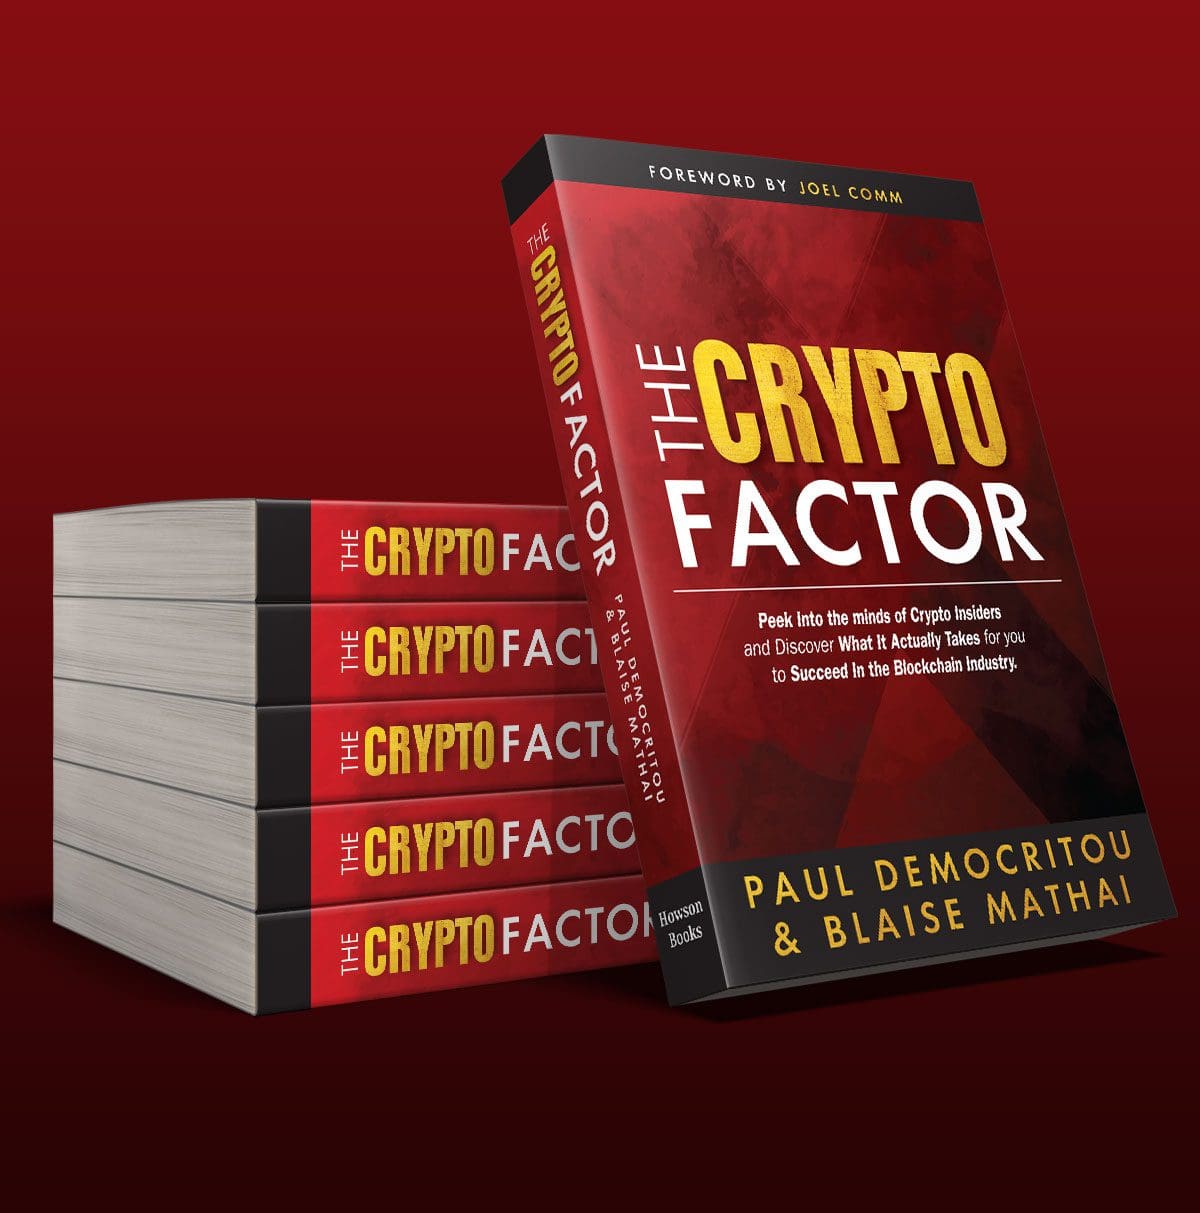 The Crypto Factor book